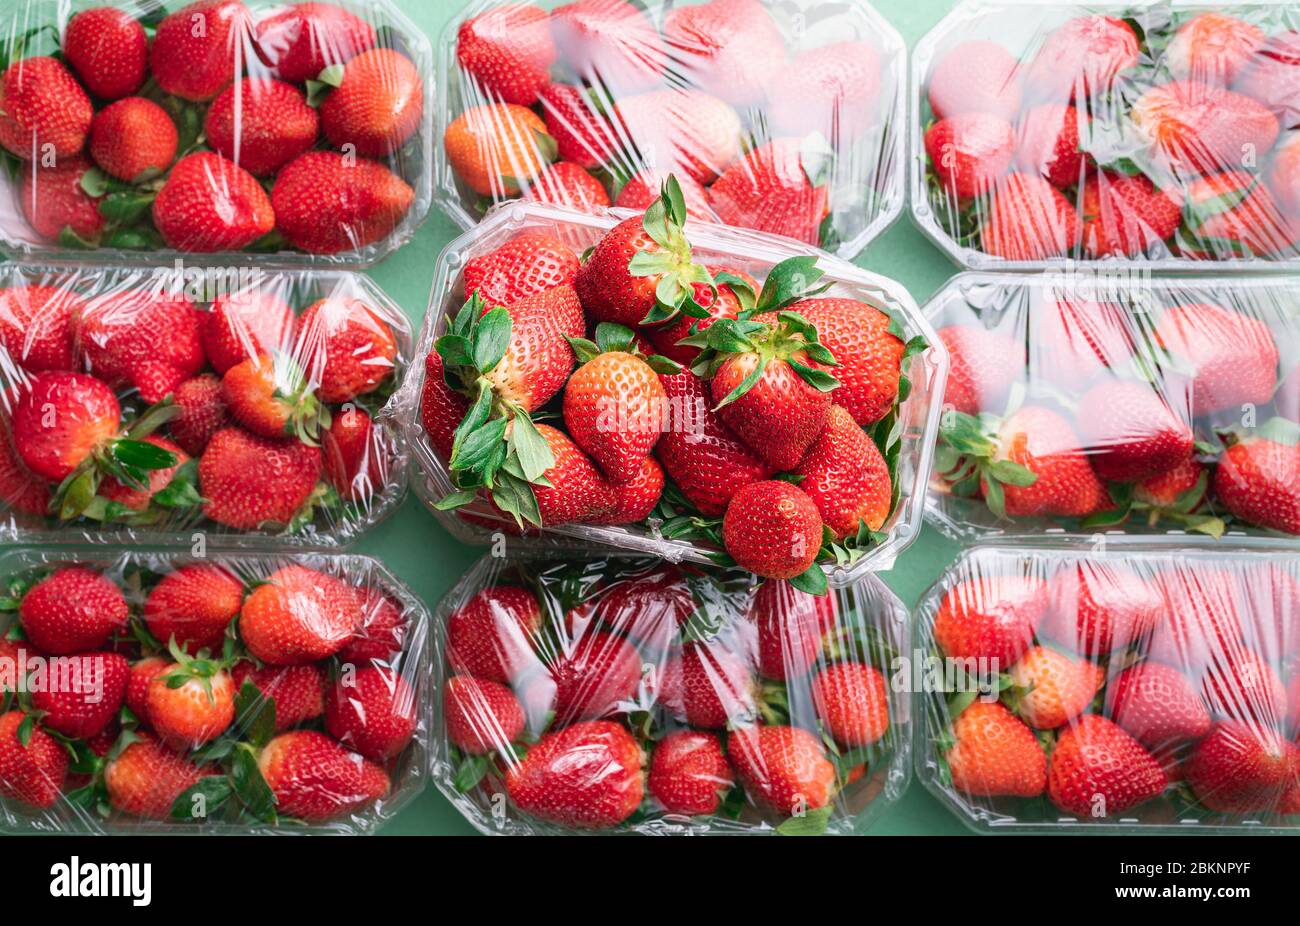 Molte fragole in scatole pronte per l'acquisto. Piatto con frutta fresca matura fragola. Abbondanza di frutta dolce estiva. Concetto di stagione delle fragole. Foto Stock